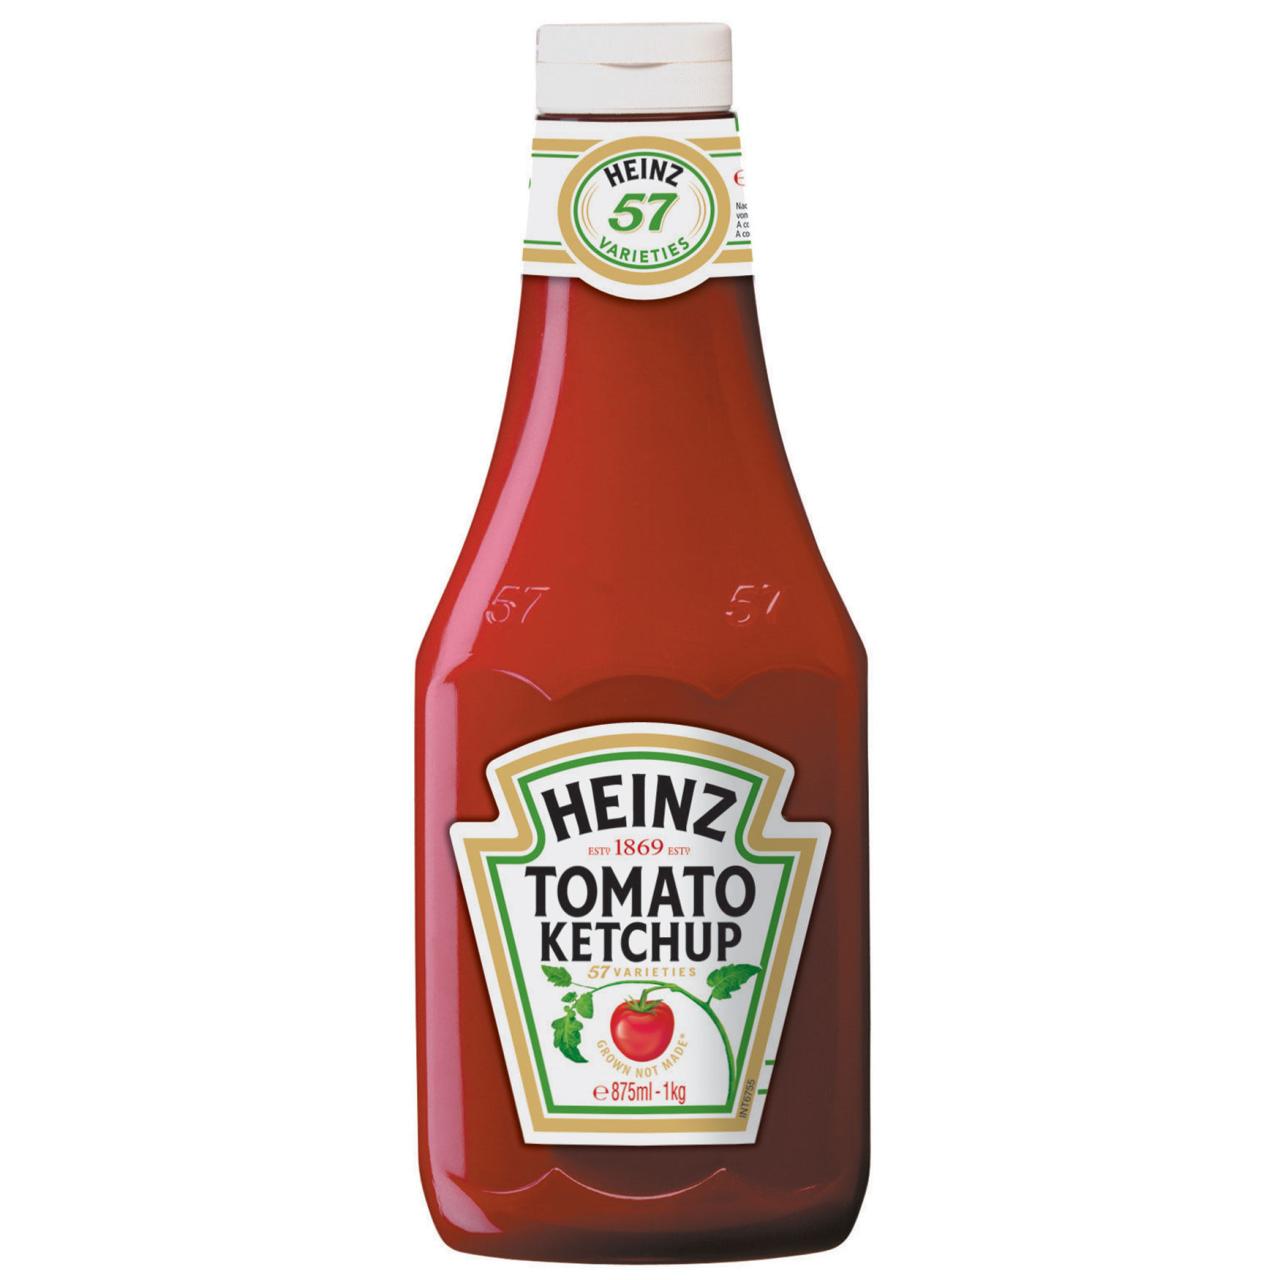 Heinz Tomato Ketchup 1kg Display